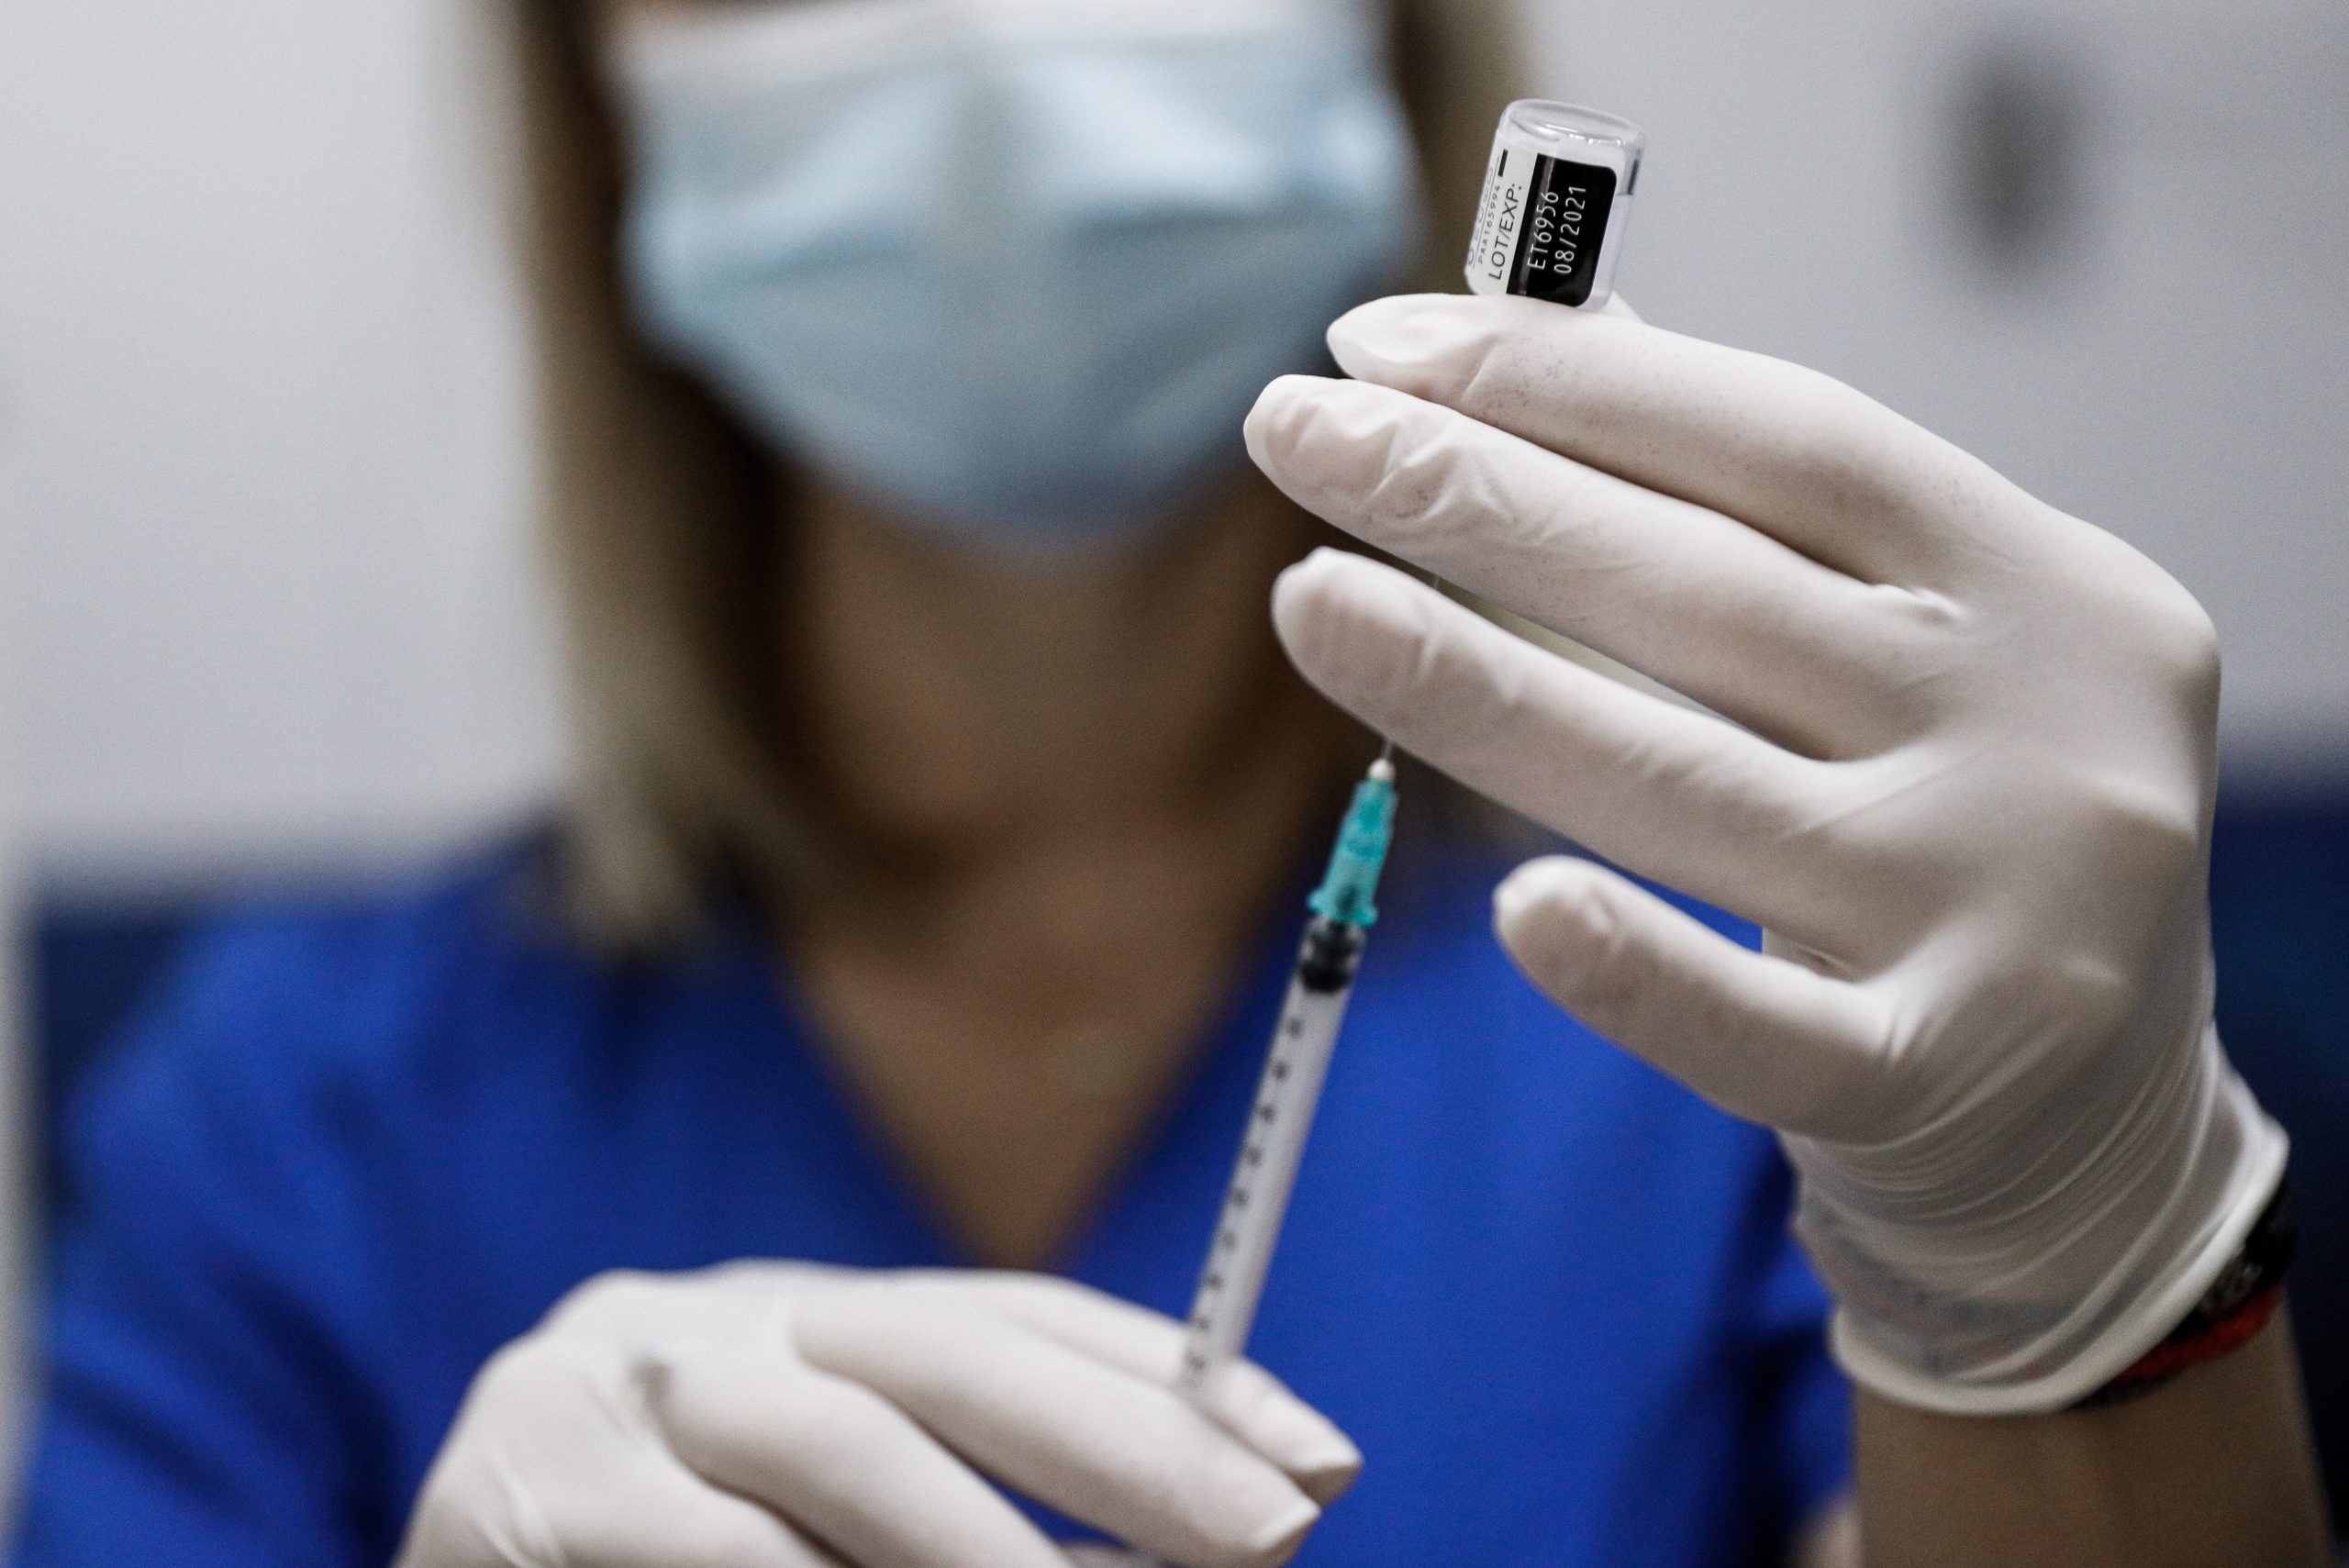 Κορονοϊός: Γιατί πρέπει να εμβολιαστούμε όλοι; – Ειδικοί επιστήμονες απαντούν